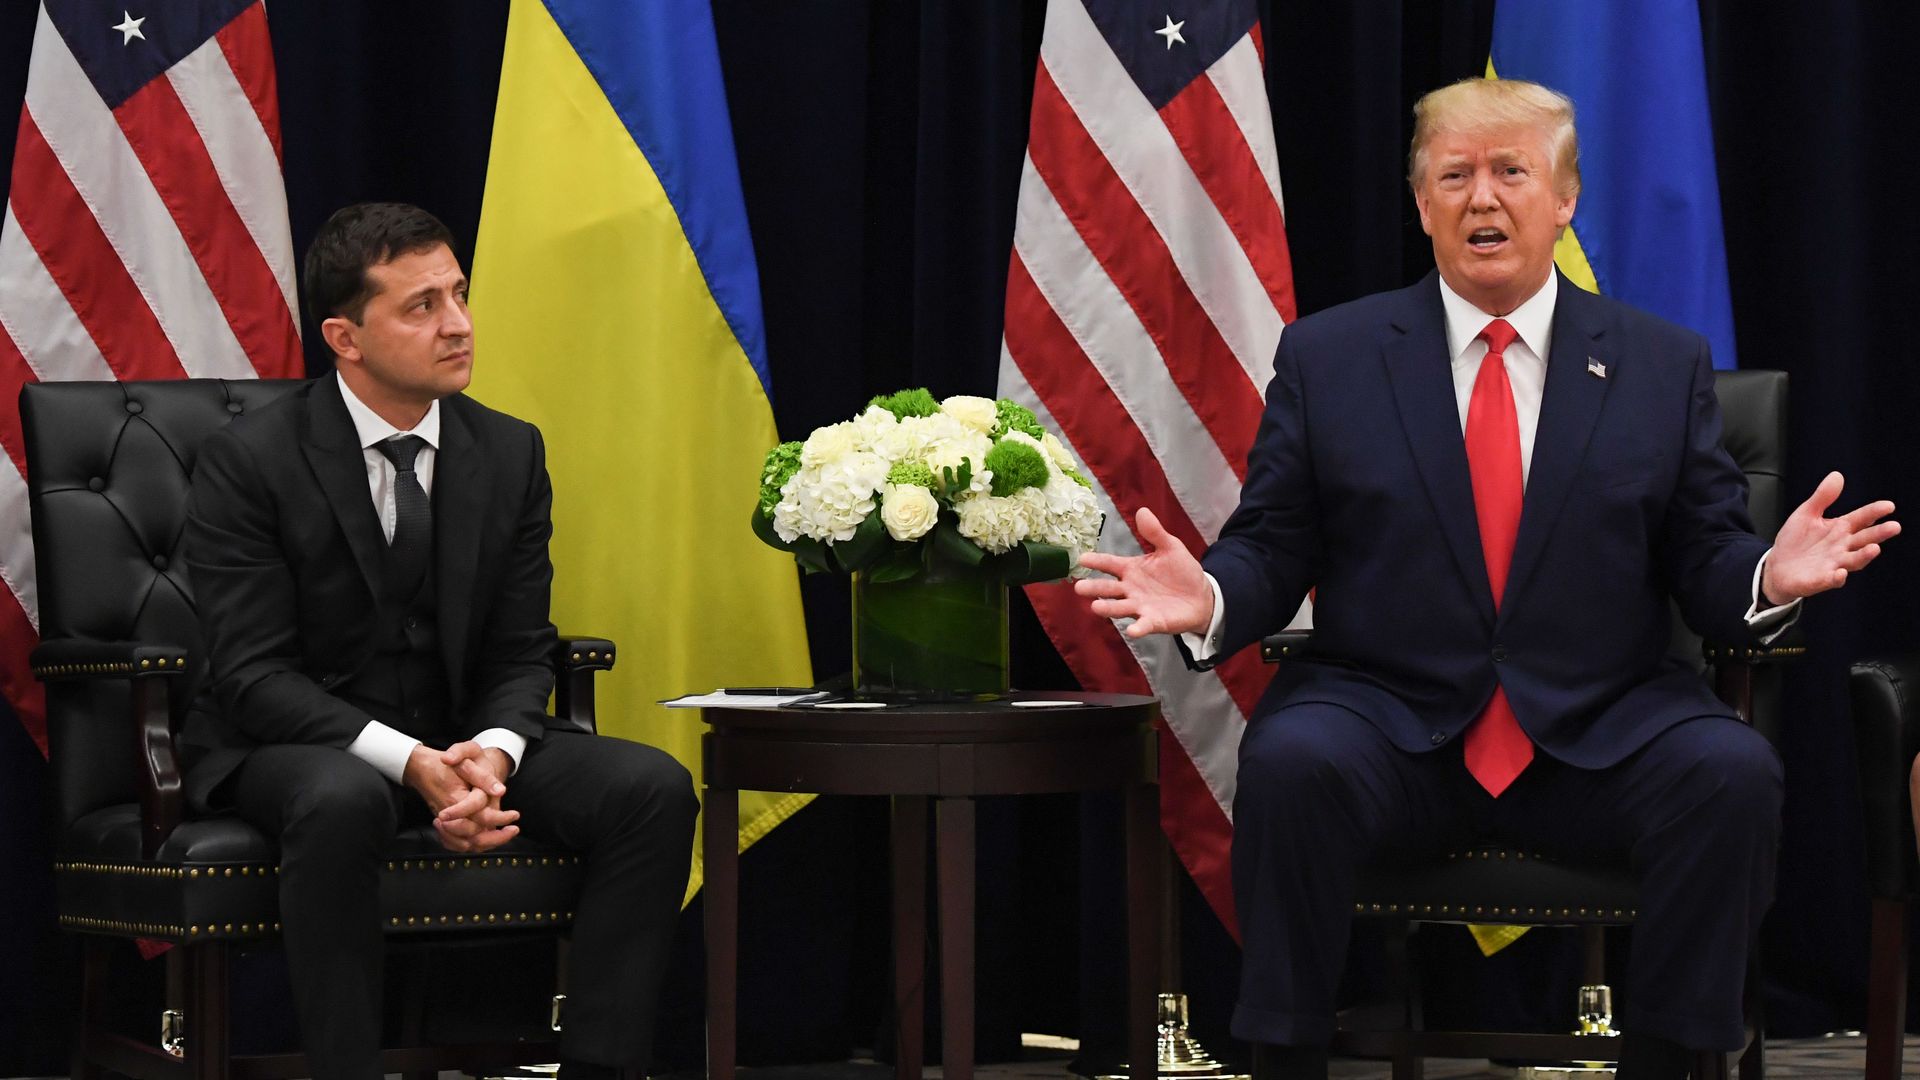 President Trump speaks as Ukrainian President Volodymyr Zelensky looks on during a meeting in New York on September 25